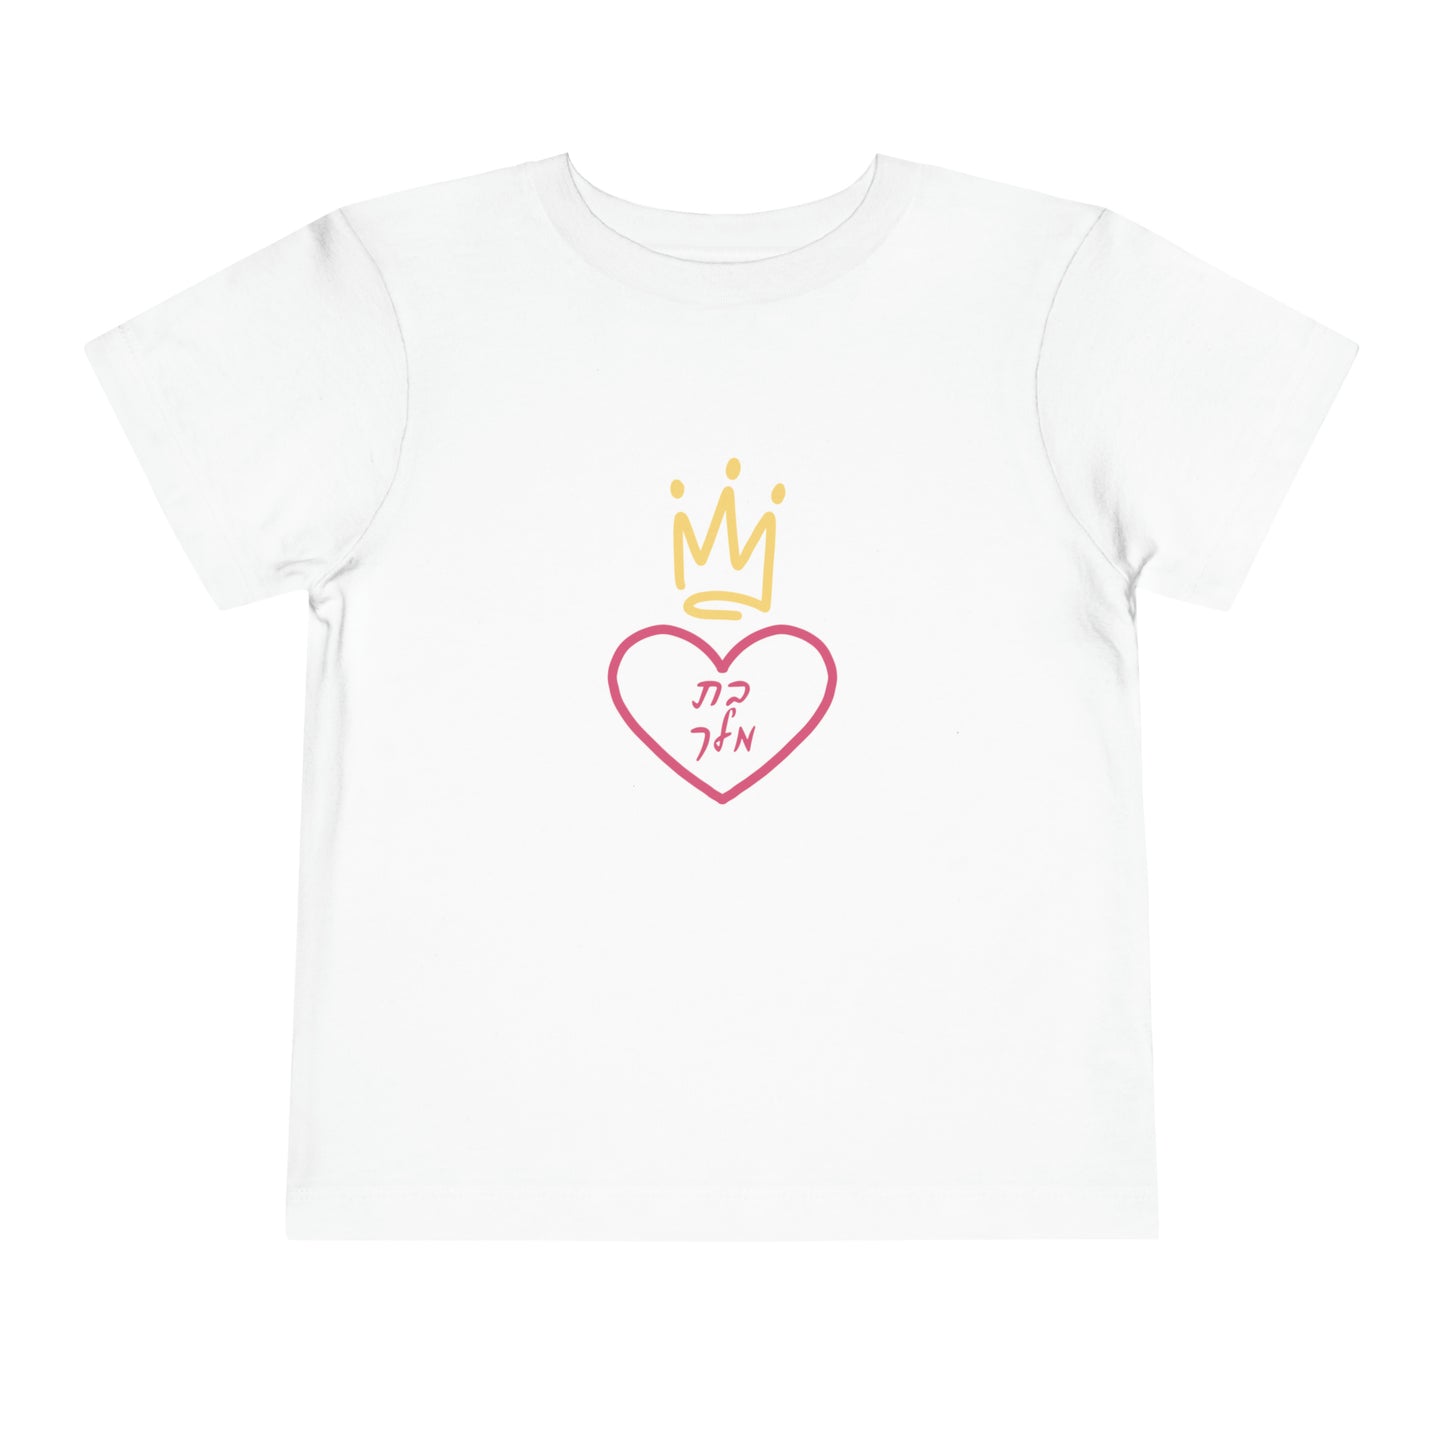 Toddler Girl's Bas Melech short sleeve t-shirt